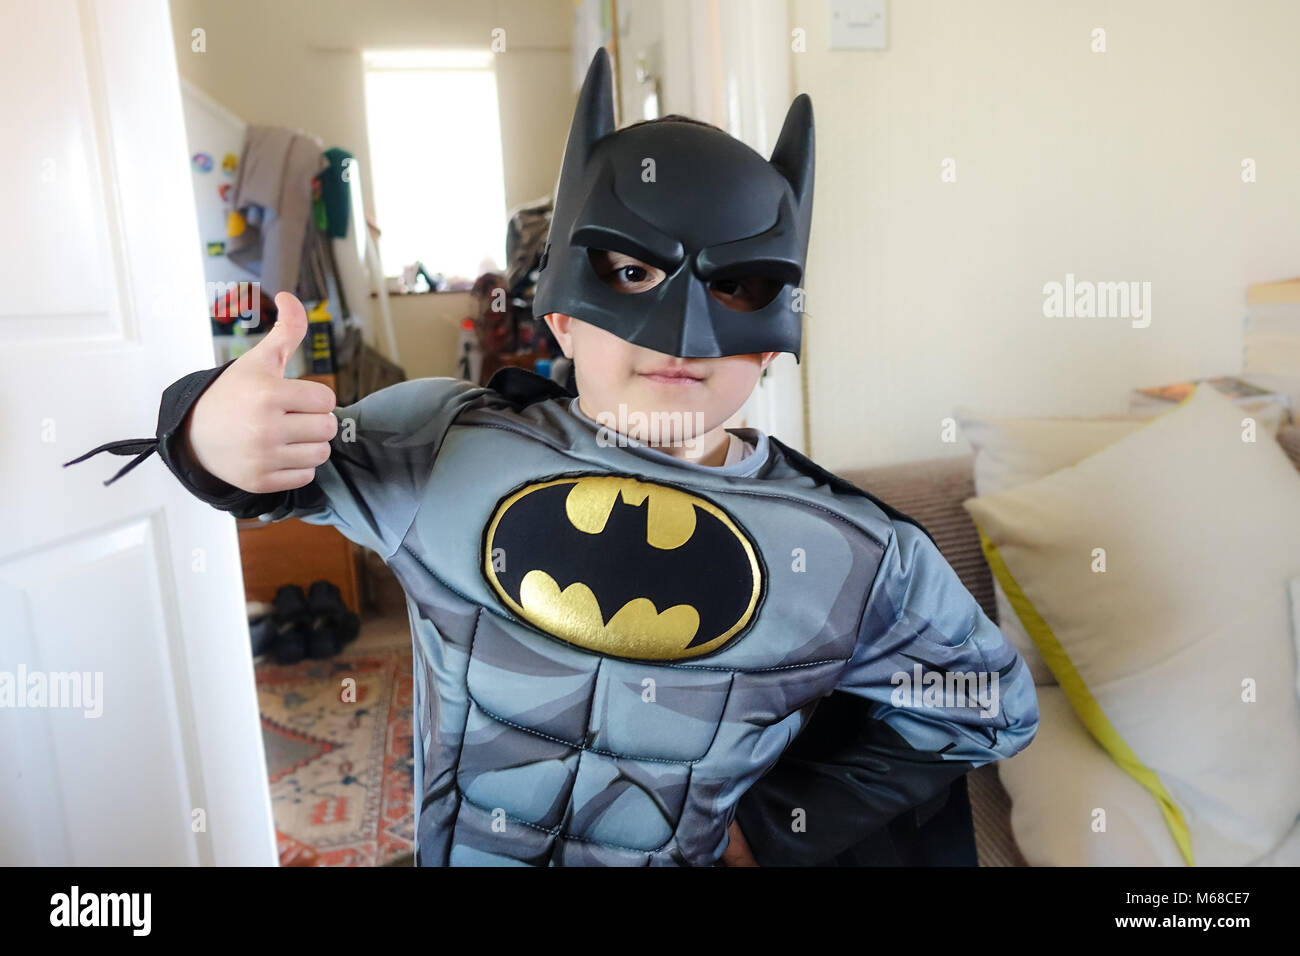 Un joven vestido con un traje de super héroe Batman Fotografía de stock -  Alamy